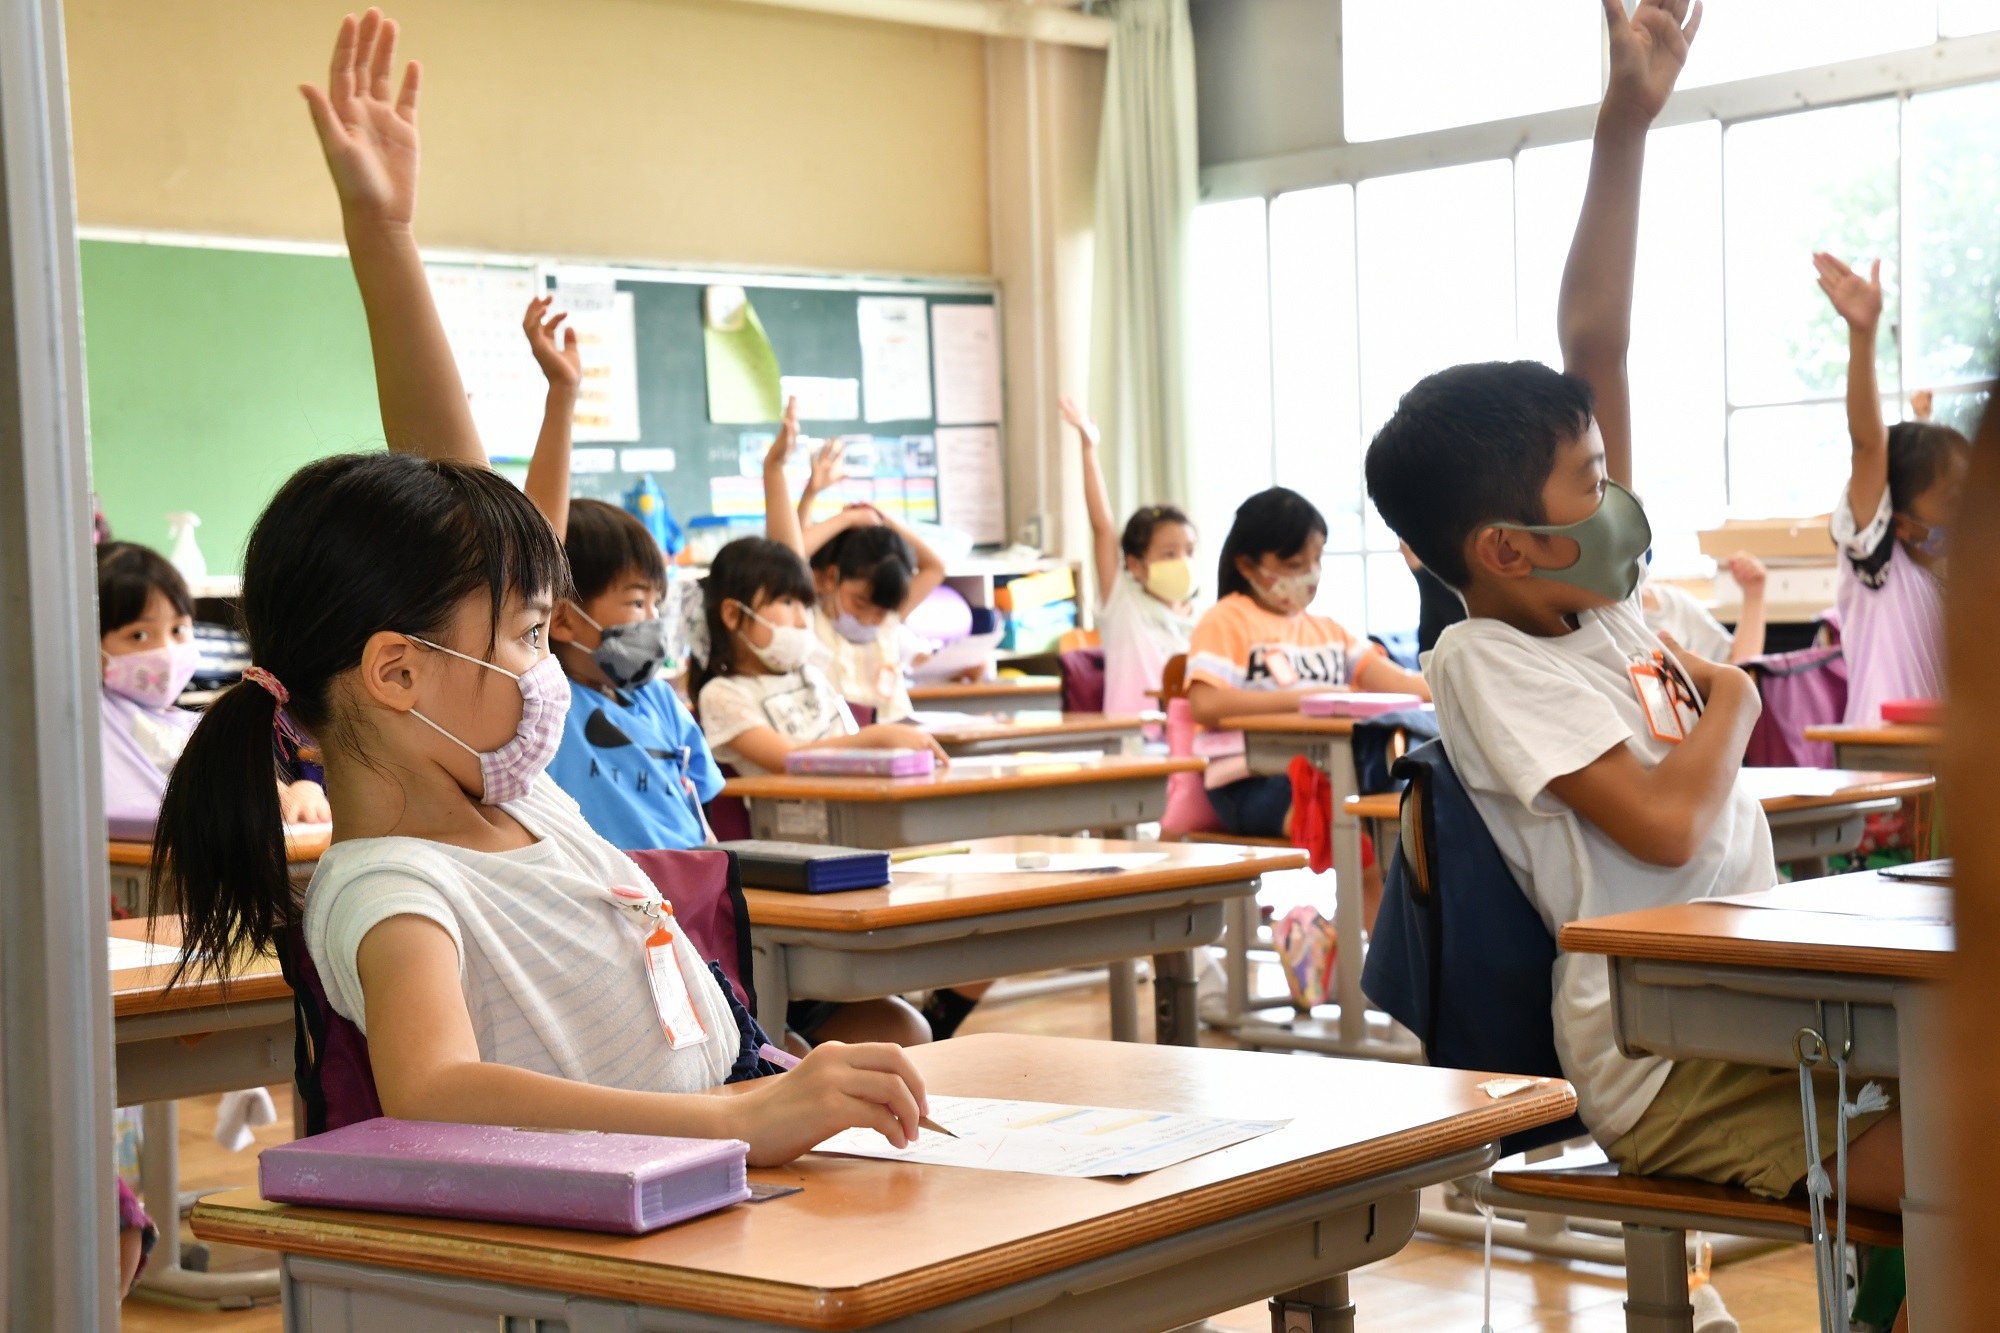 小学校の教室で子どもたちが手を挙げている様子